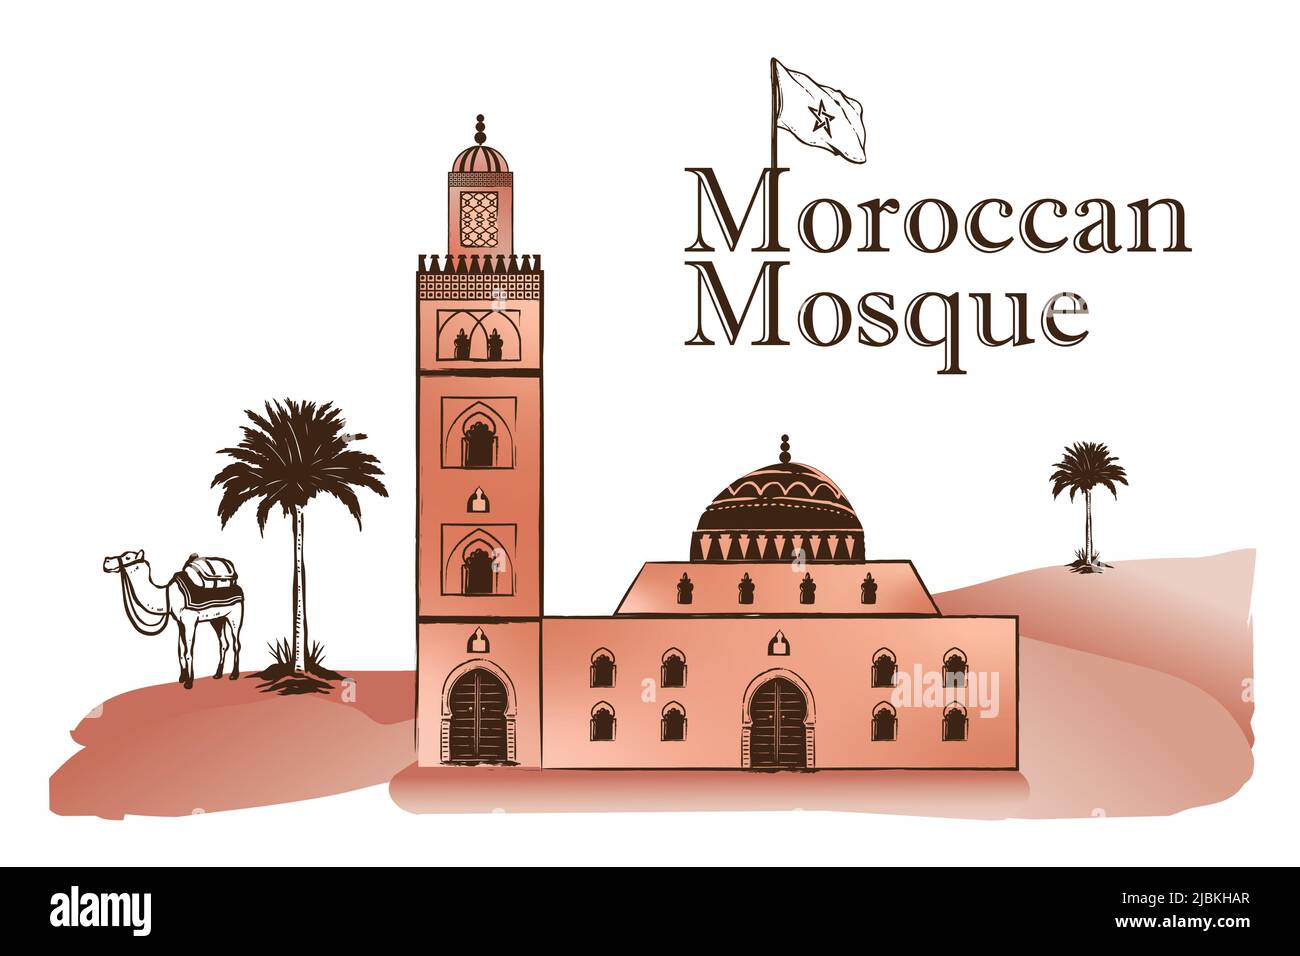 Marokkanische Moschee, Palmen, Kamel, sahara-Dünen. Vektor-Bild. Isolierte touristische Postkarte, Poster, Kalender Vorlage oder Malbuch Seite Stock Vektor